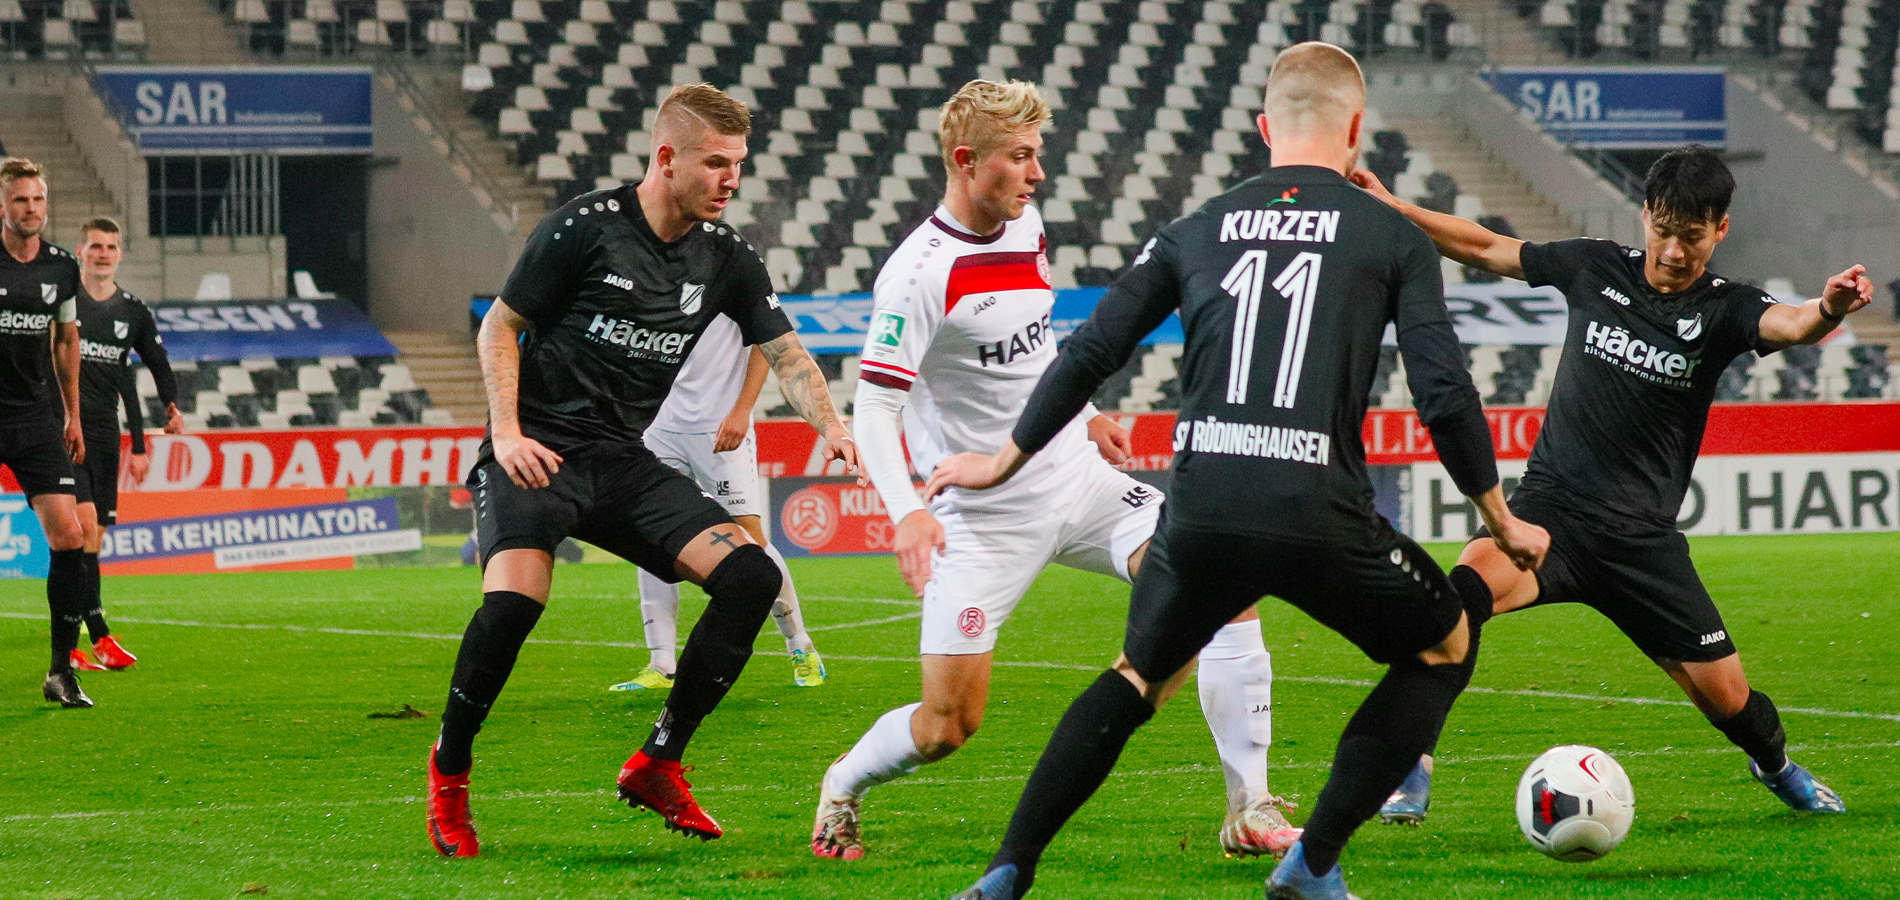 Durch Harenbrocks Hinspieltreffer platzte gegen den SV Rödinghausen der Knoten. (Foto: Endberg)